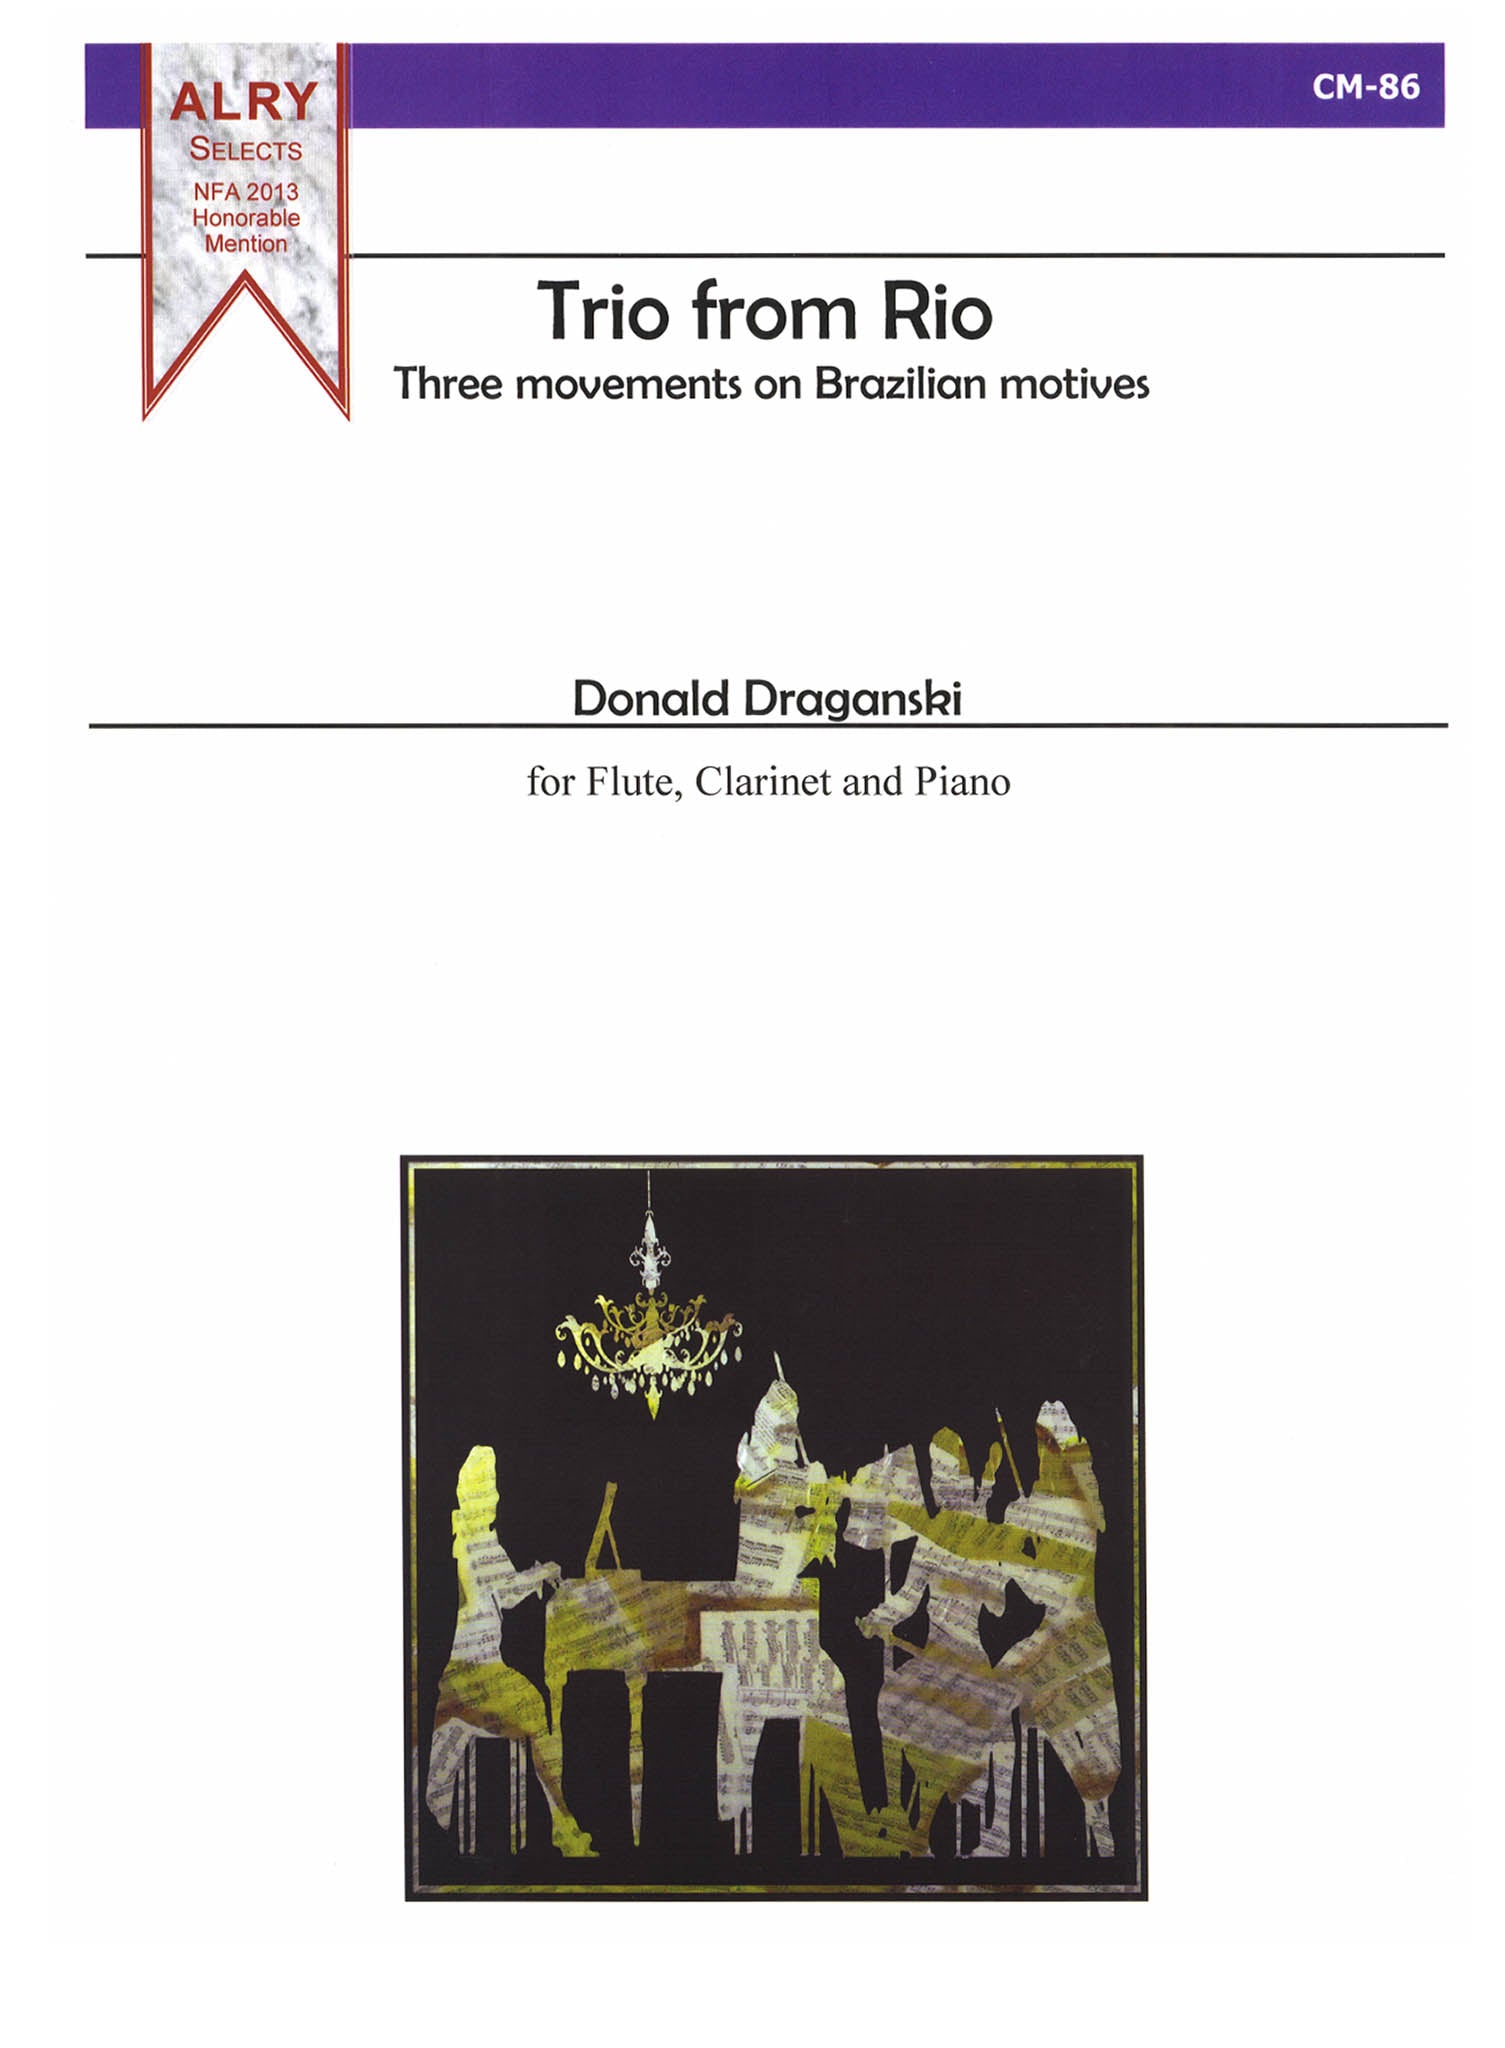 Draganski Trio from Rio cover